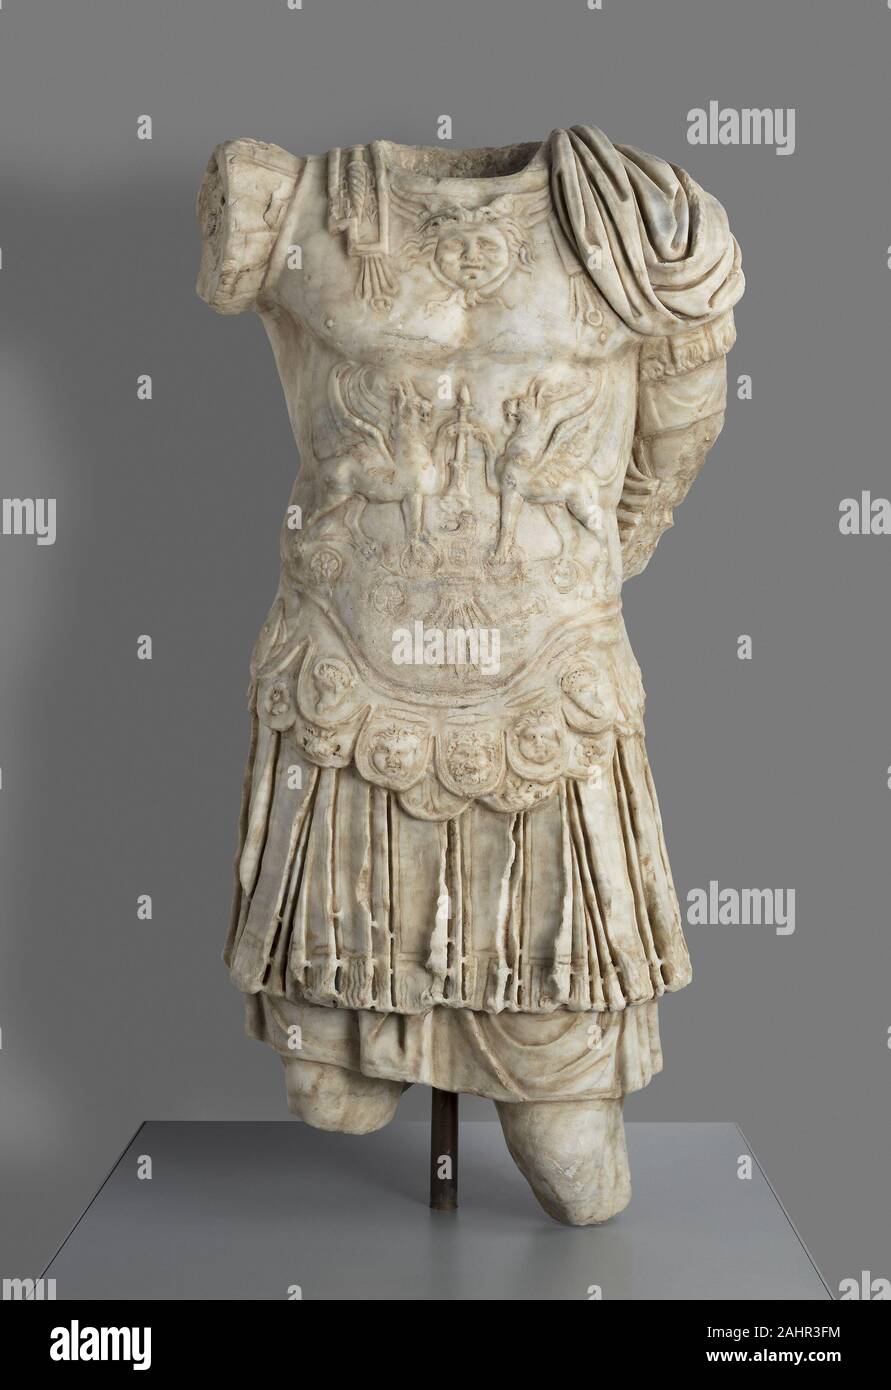 emperor roman garments